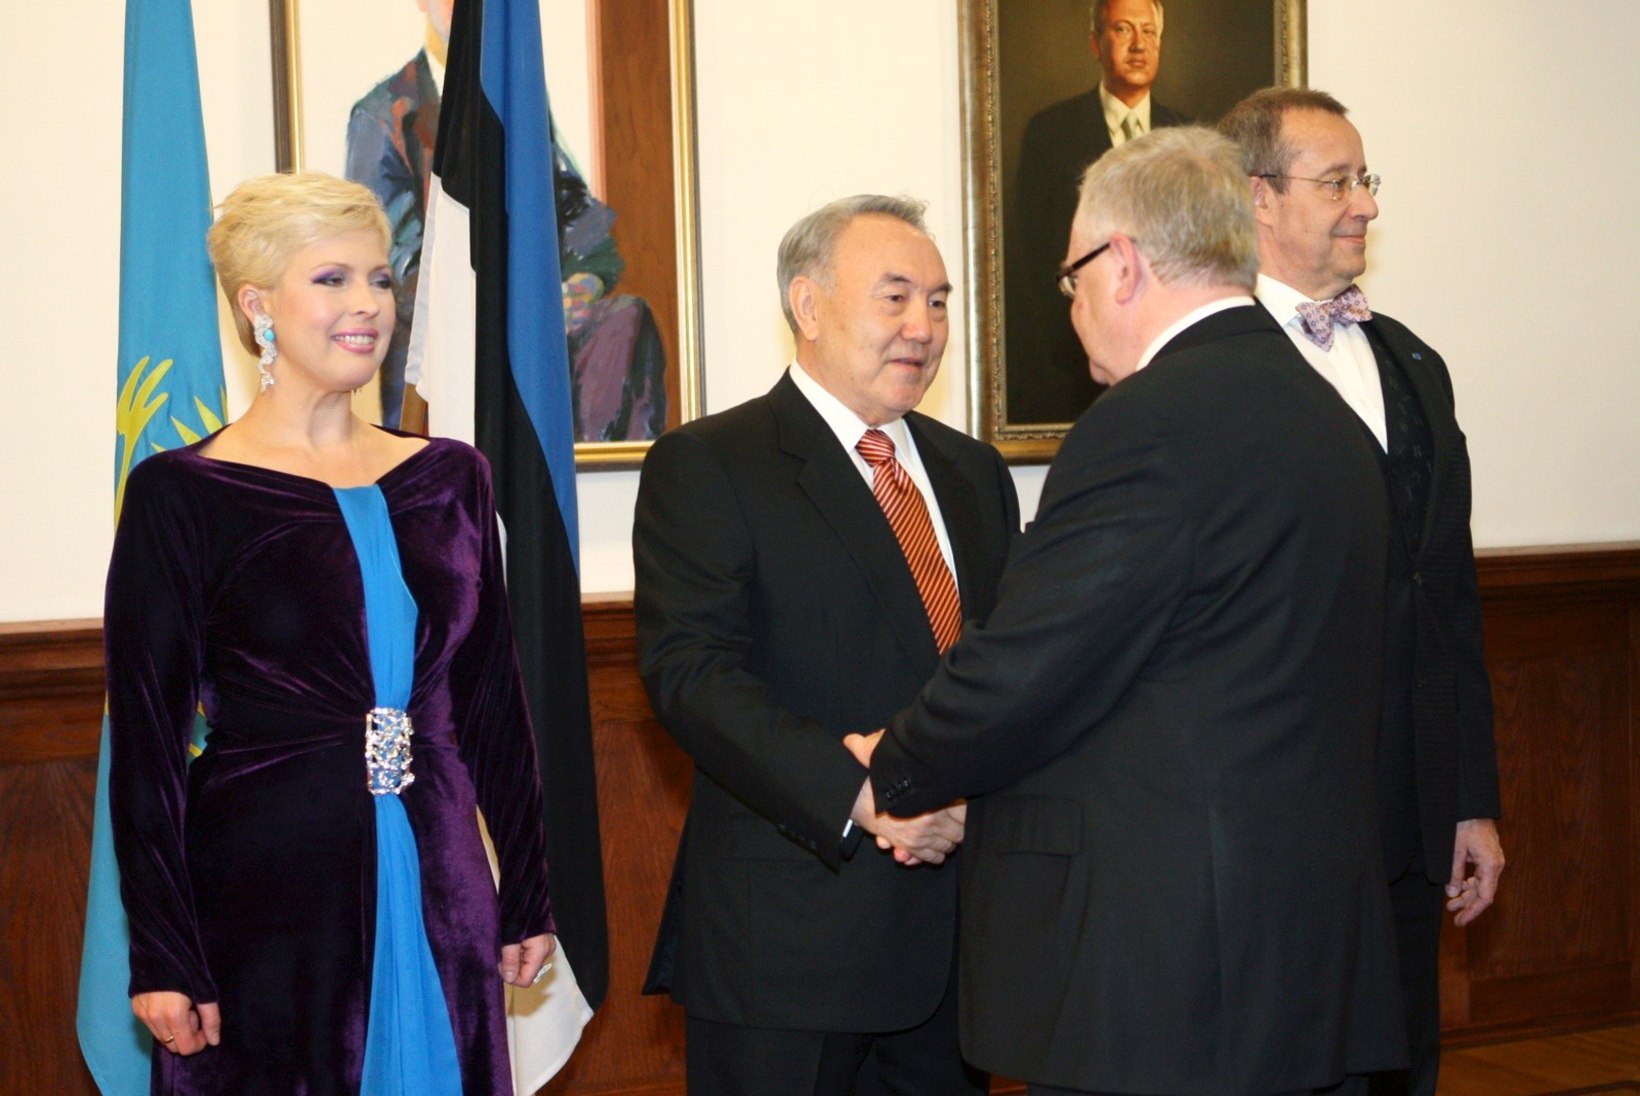 Evelin Ilves meenutab Kasahstani presidendi Nazarbajevi visiiti: Nursu oli rabatud! Isegi ta silmad olid veekalkvel